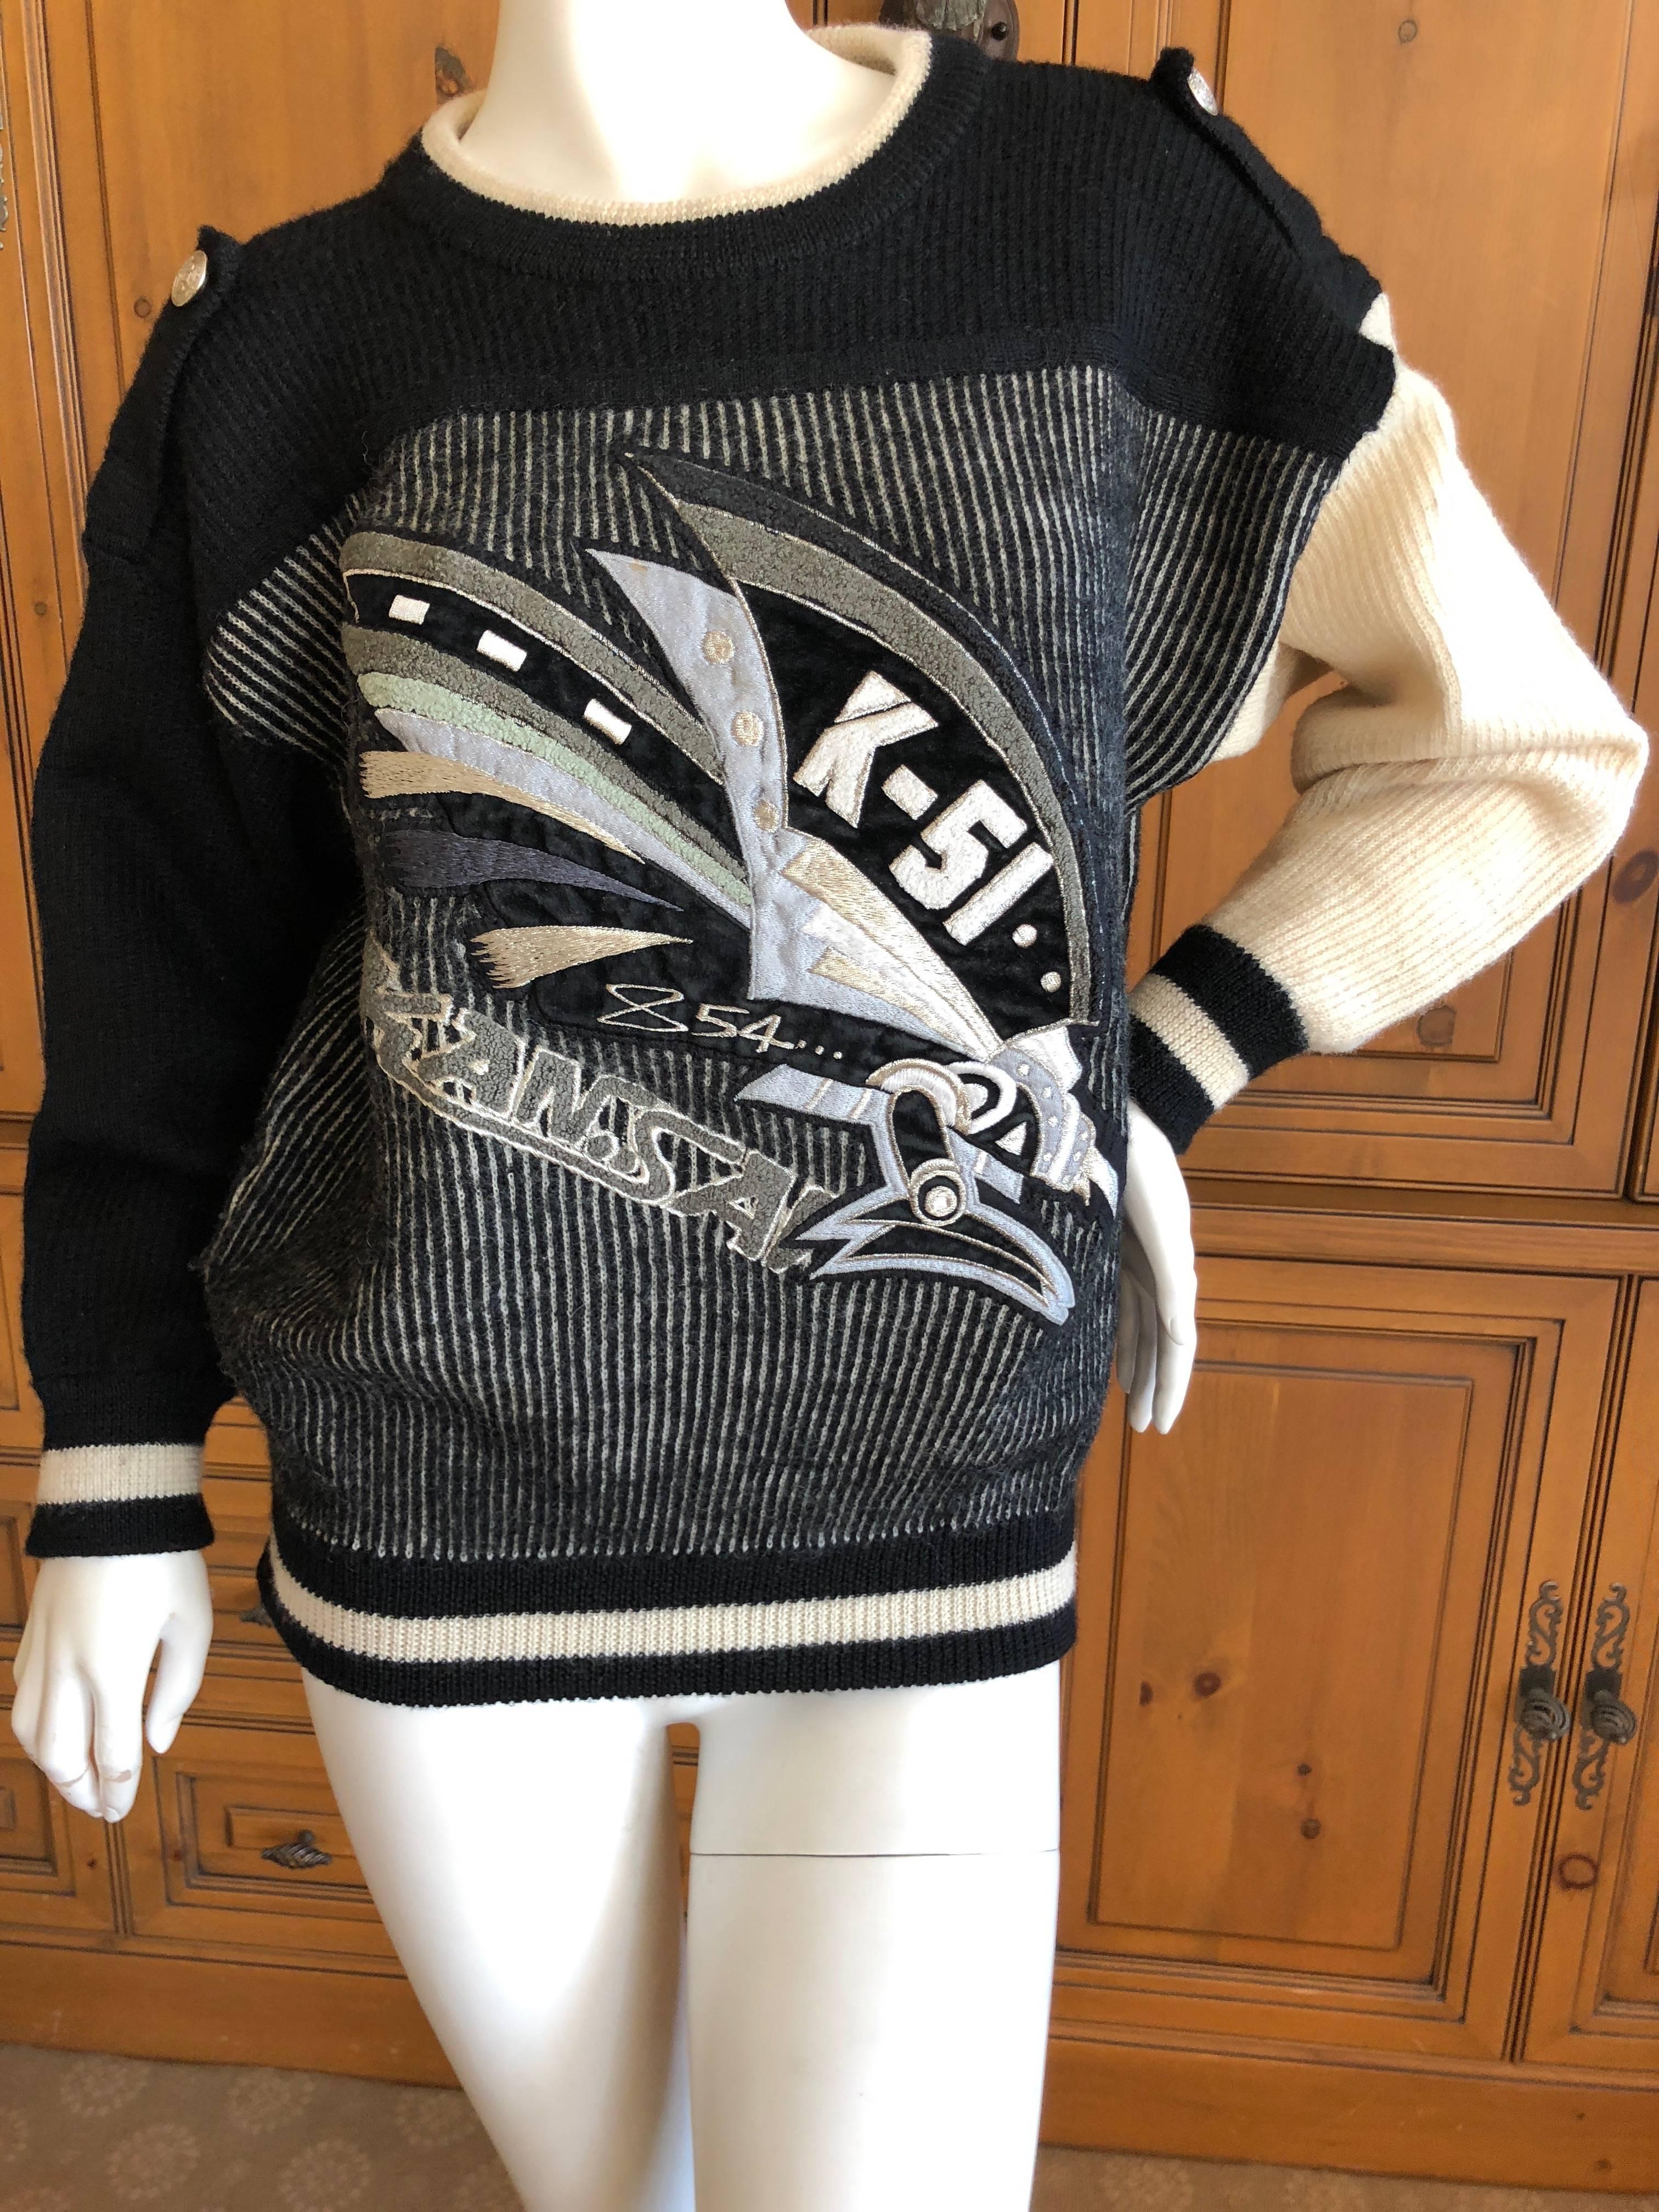 Kansai Yamamoto 1980's Sweater